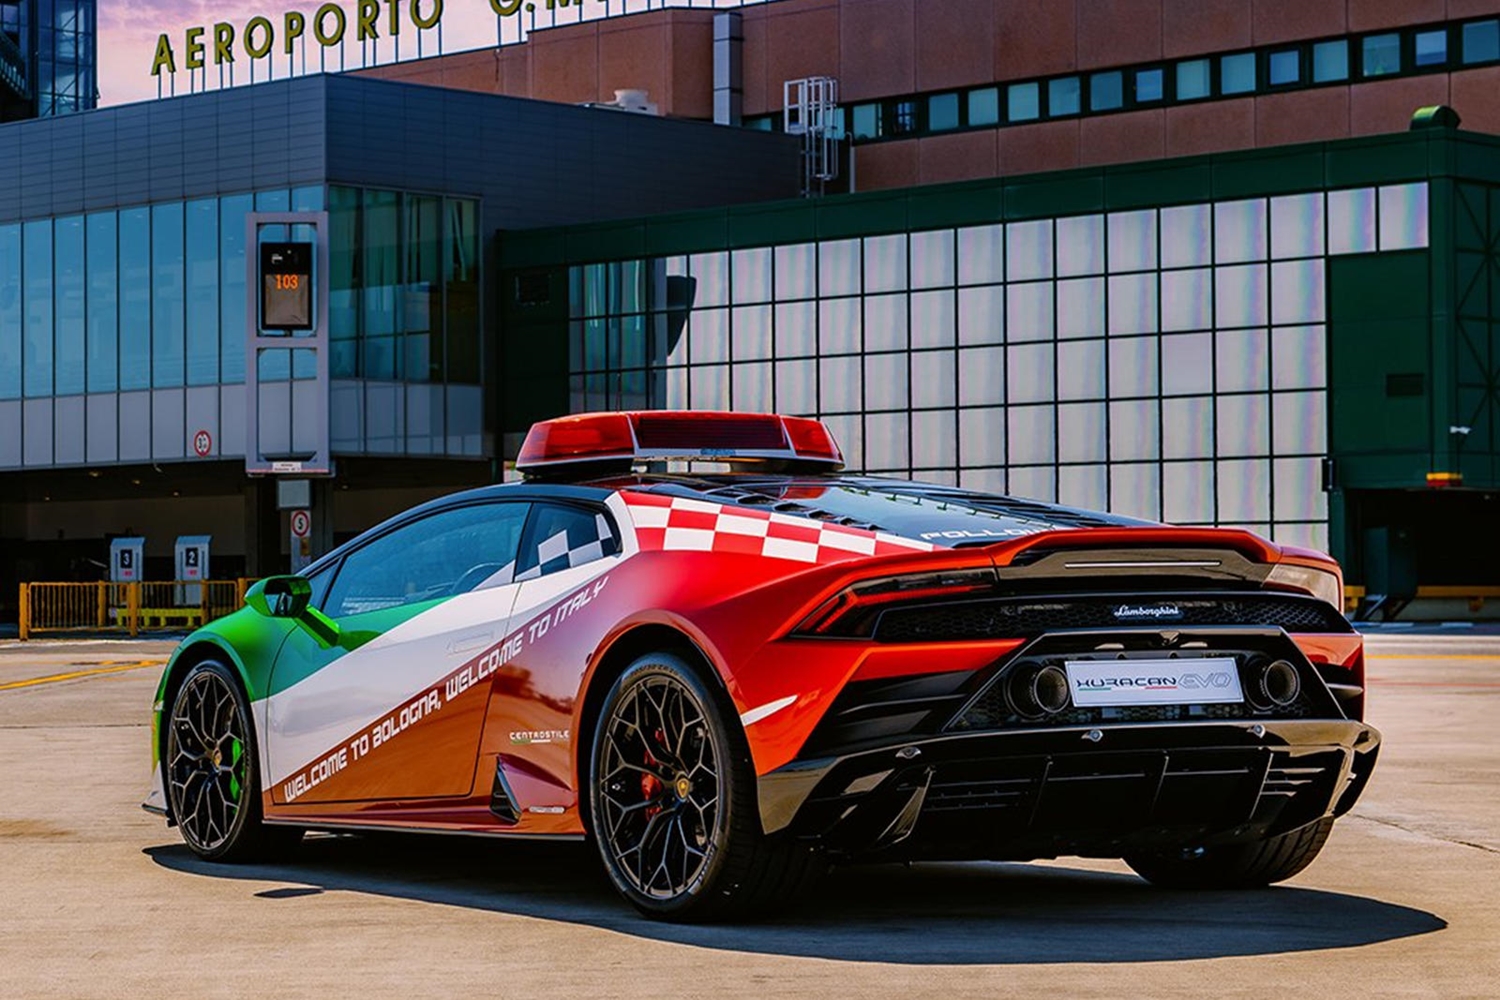 Olasz trikolórban szaladgál a reptéri Lamborghini 7